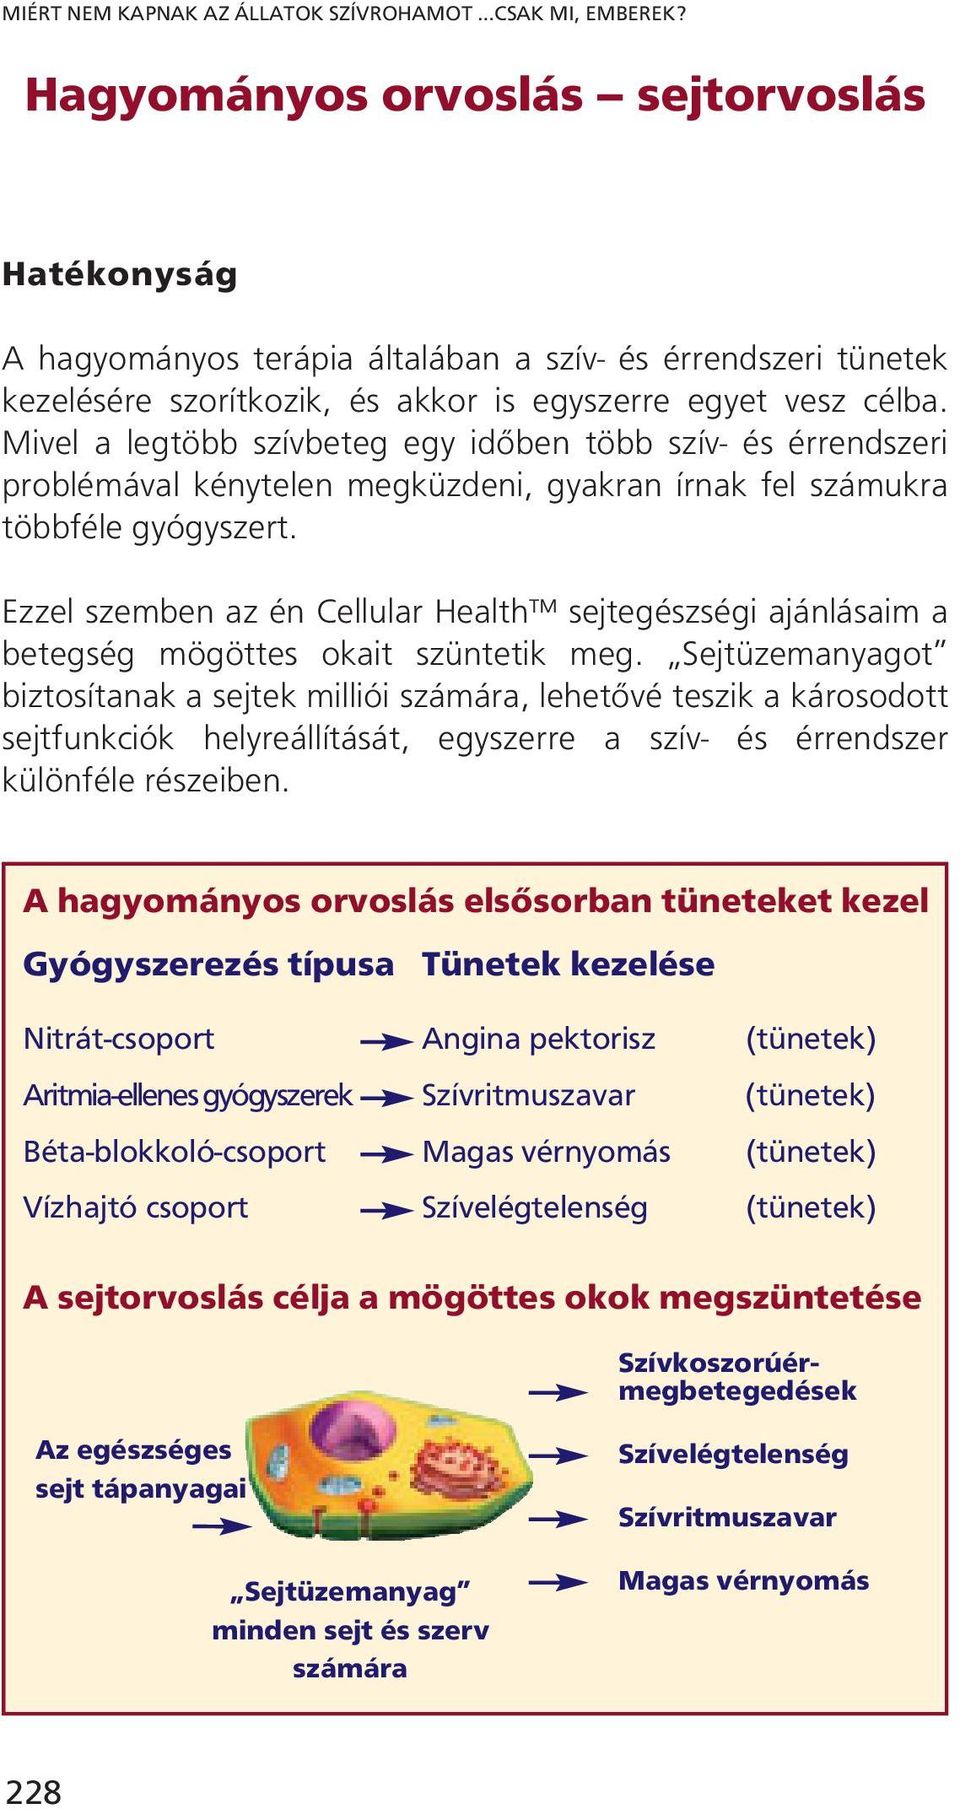 nitrát-oxid szív egészsége)